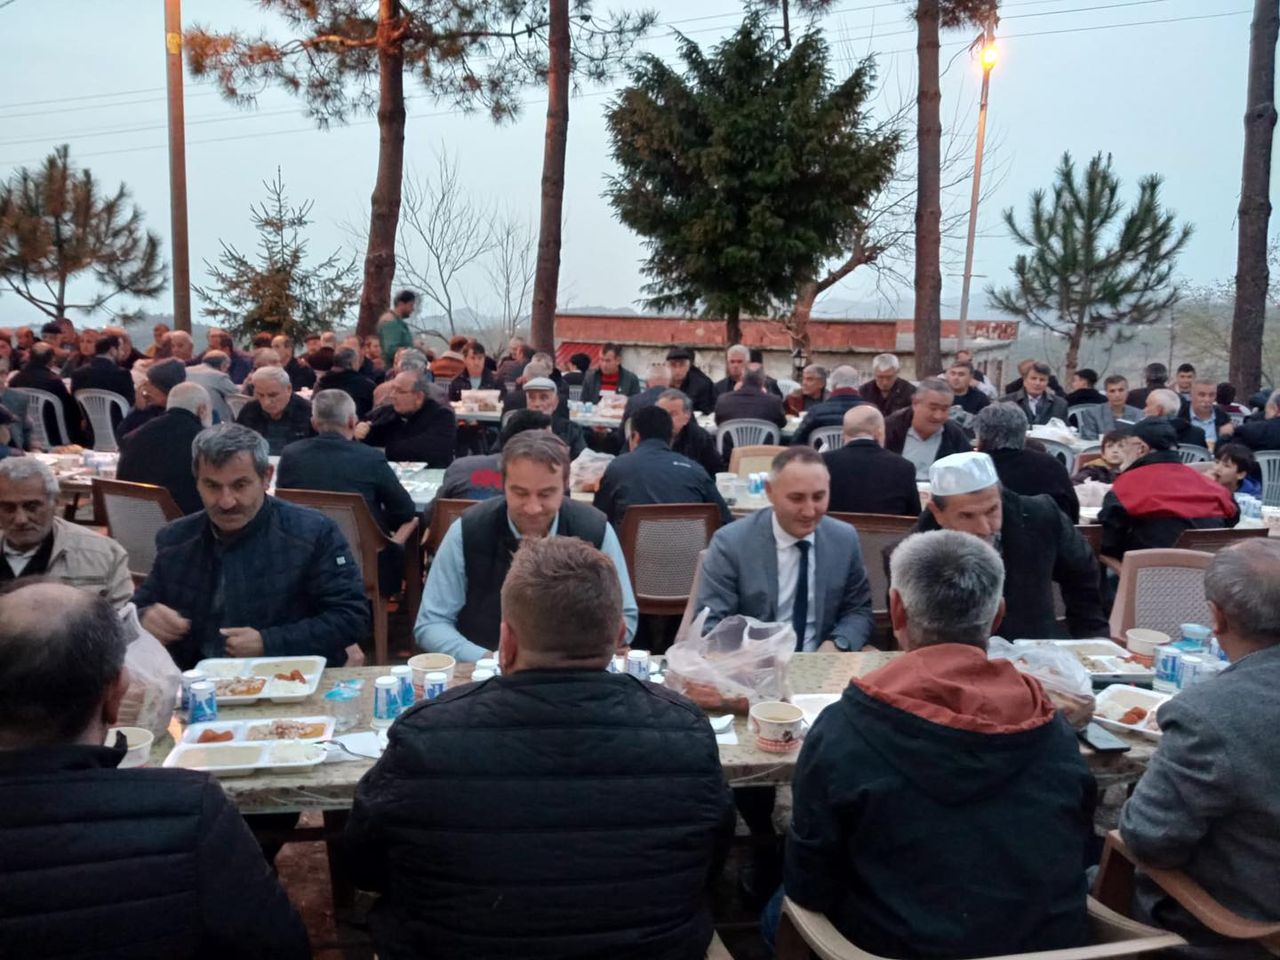 Fatsa Belediye Başkan Yardımcısı Ruhi Özbay, Tayalı Mahallesi'nde düzenlenen geleneksel iftar programına katıldı, dayanışmayı pekiştirdi.